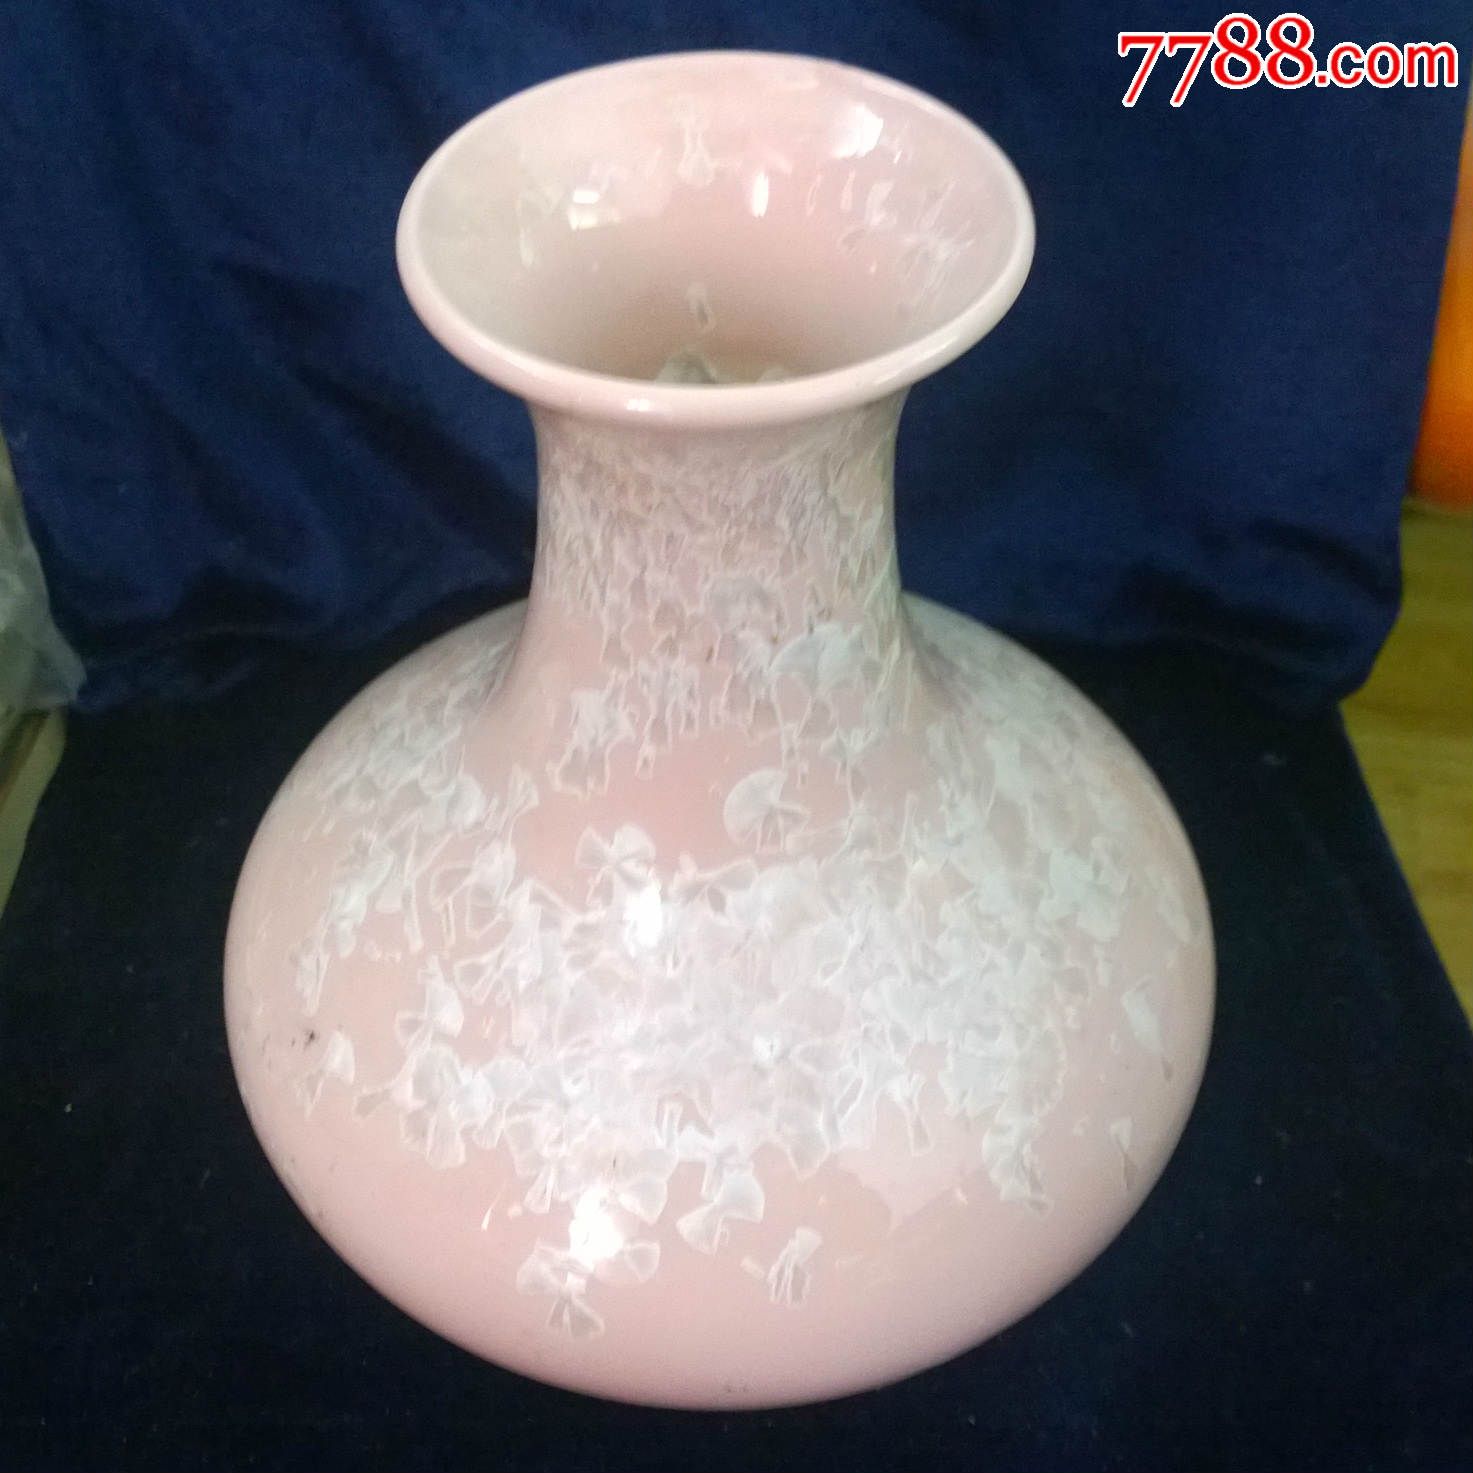 神手结晶釉花瓶1个辽宁省硅酸盐研究所陶瓷实验厂